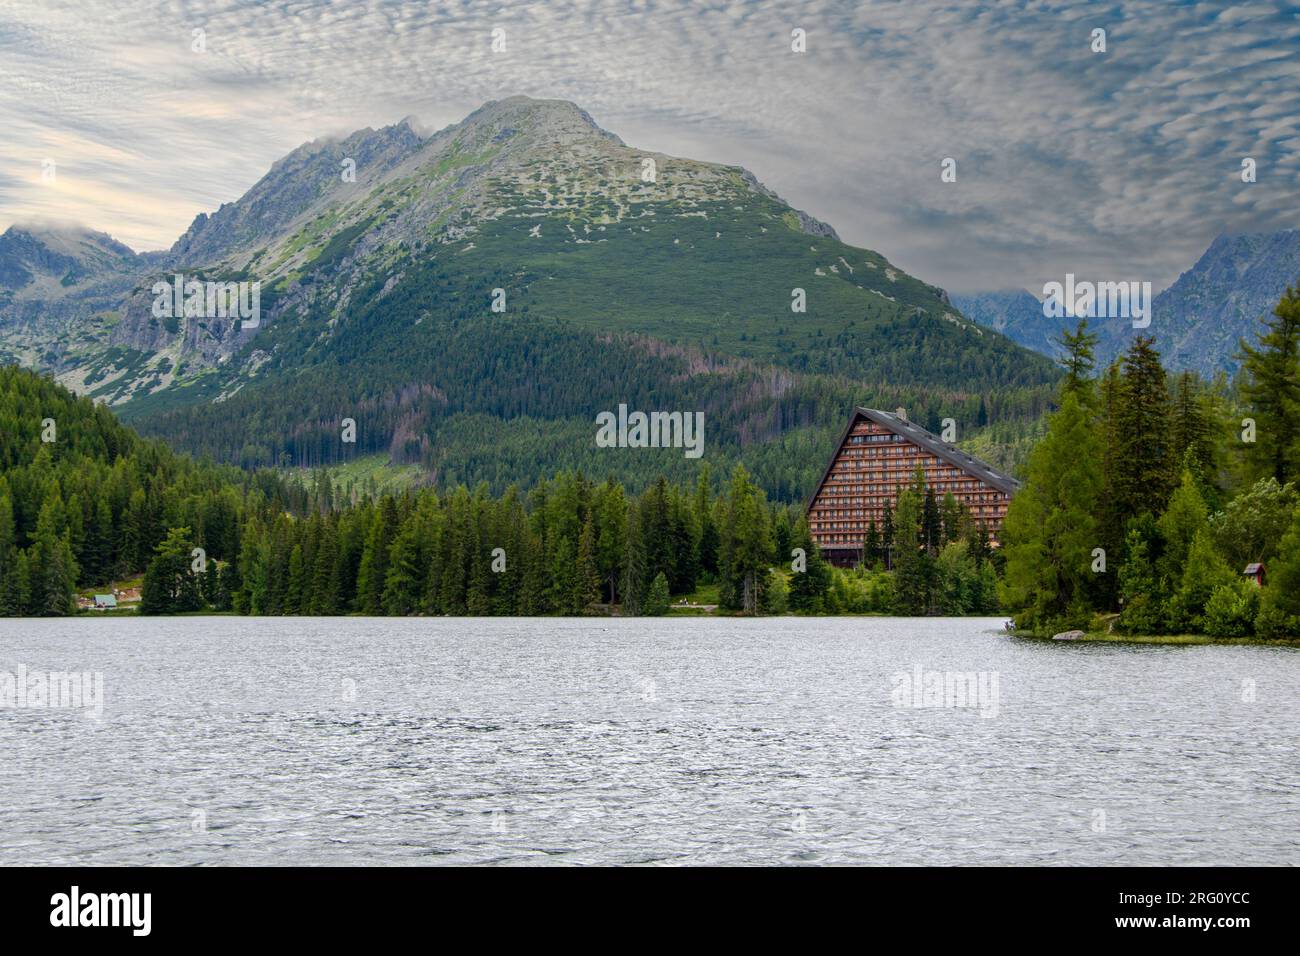 Blick über Štrbské Pleso im slowakischen Tatra-Nationalpark in Richtung eines malerisch gelegenen Hotels am Seeufer Stockfoto